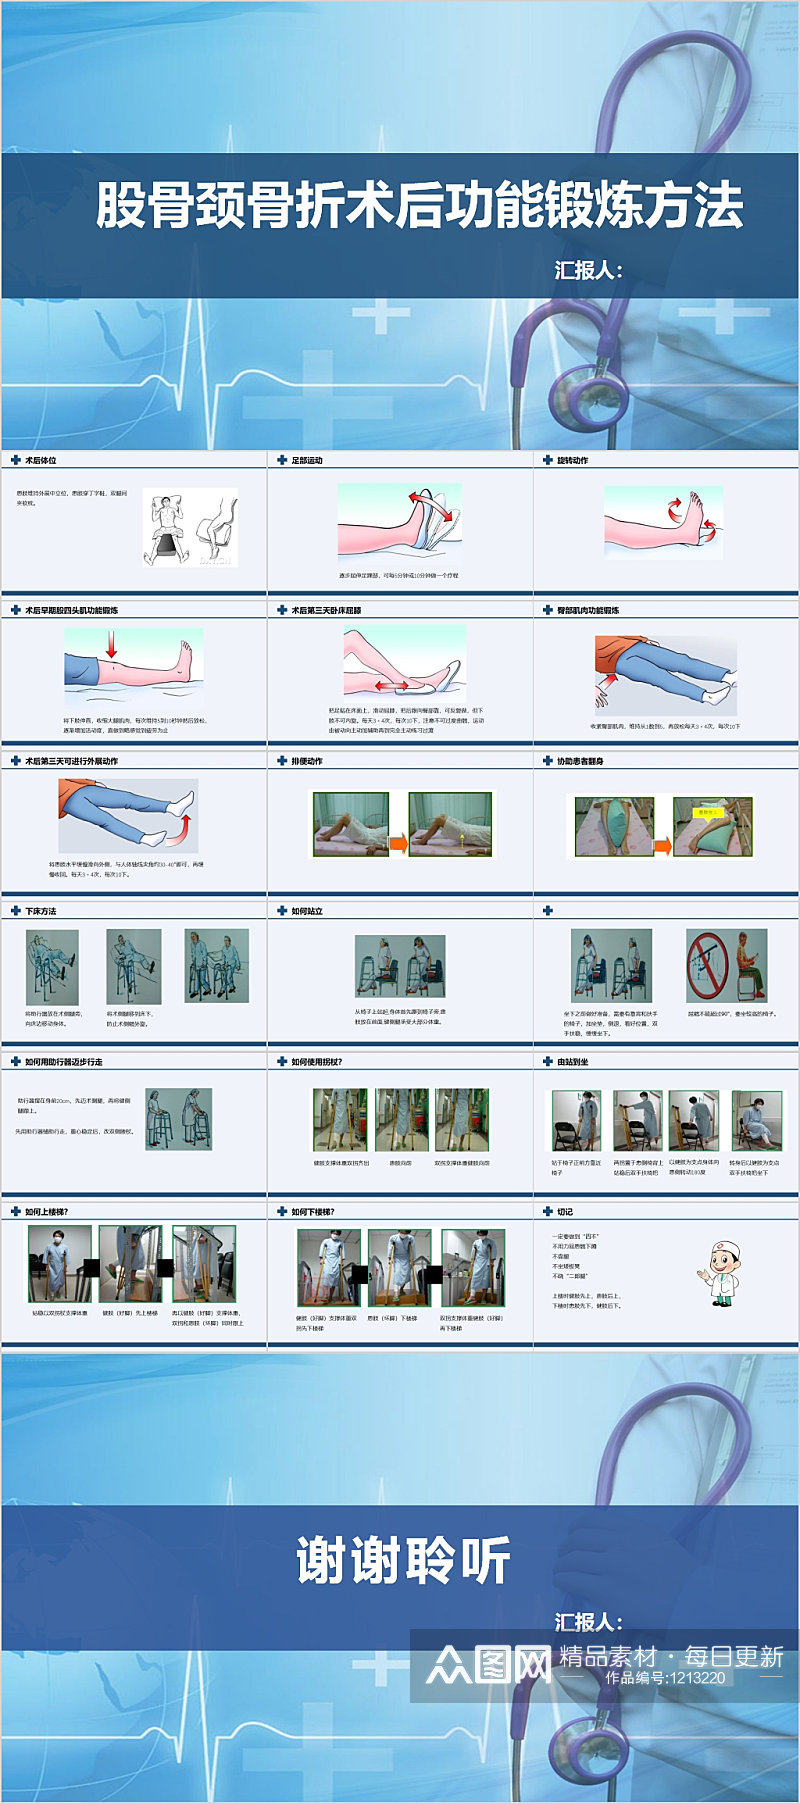 股骨颈骨折术后功能锻炼方法PPT素材